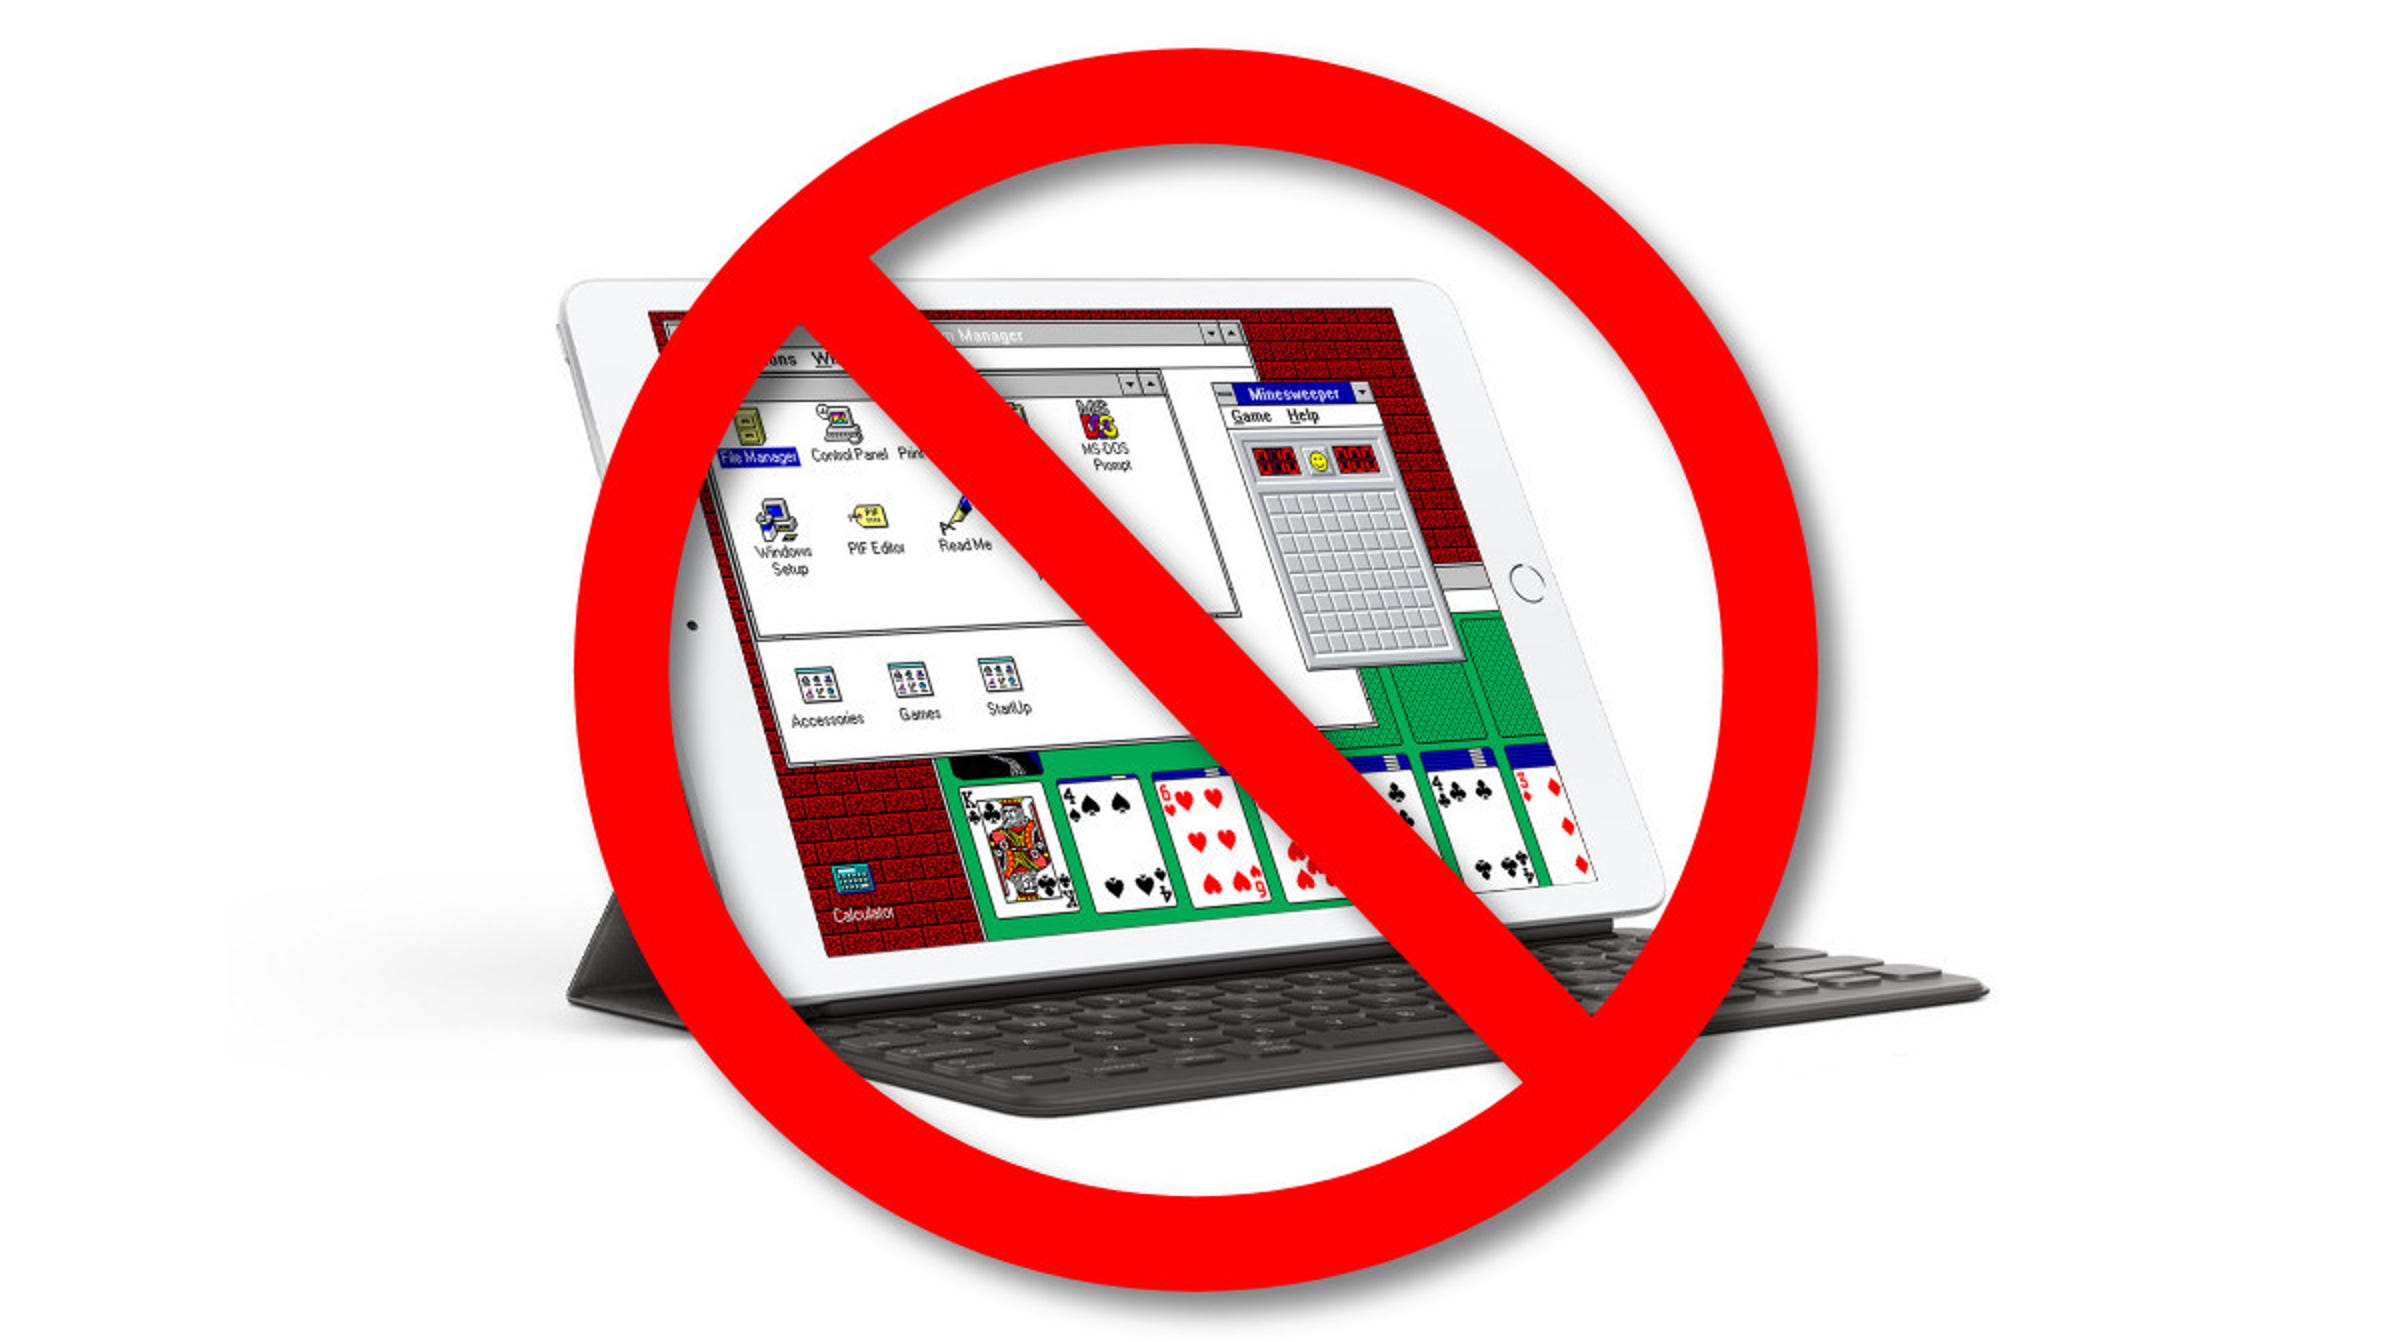 Apple Hasst Spaß, sagt nichts mehr Windows 3.1 auf iPads 90